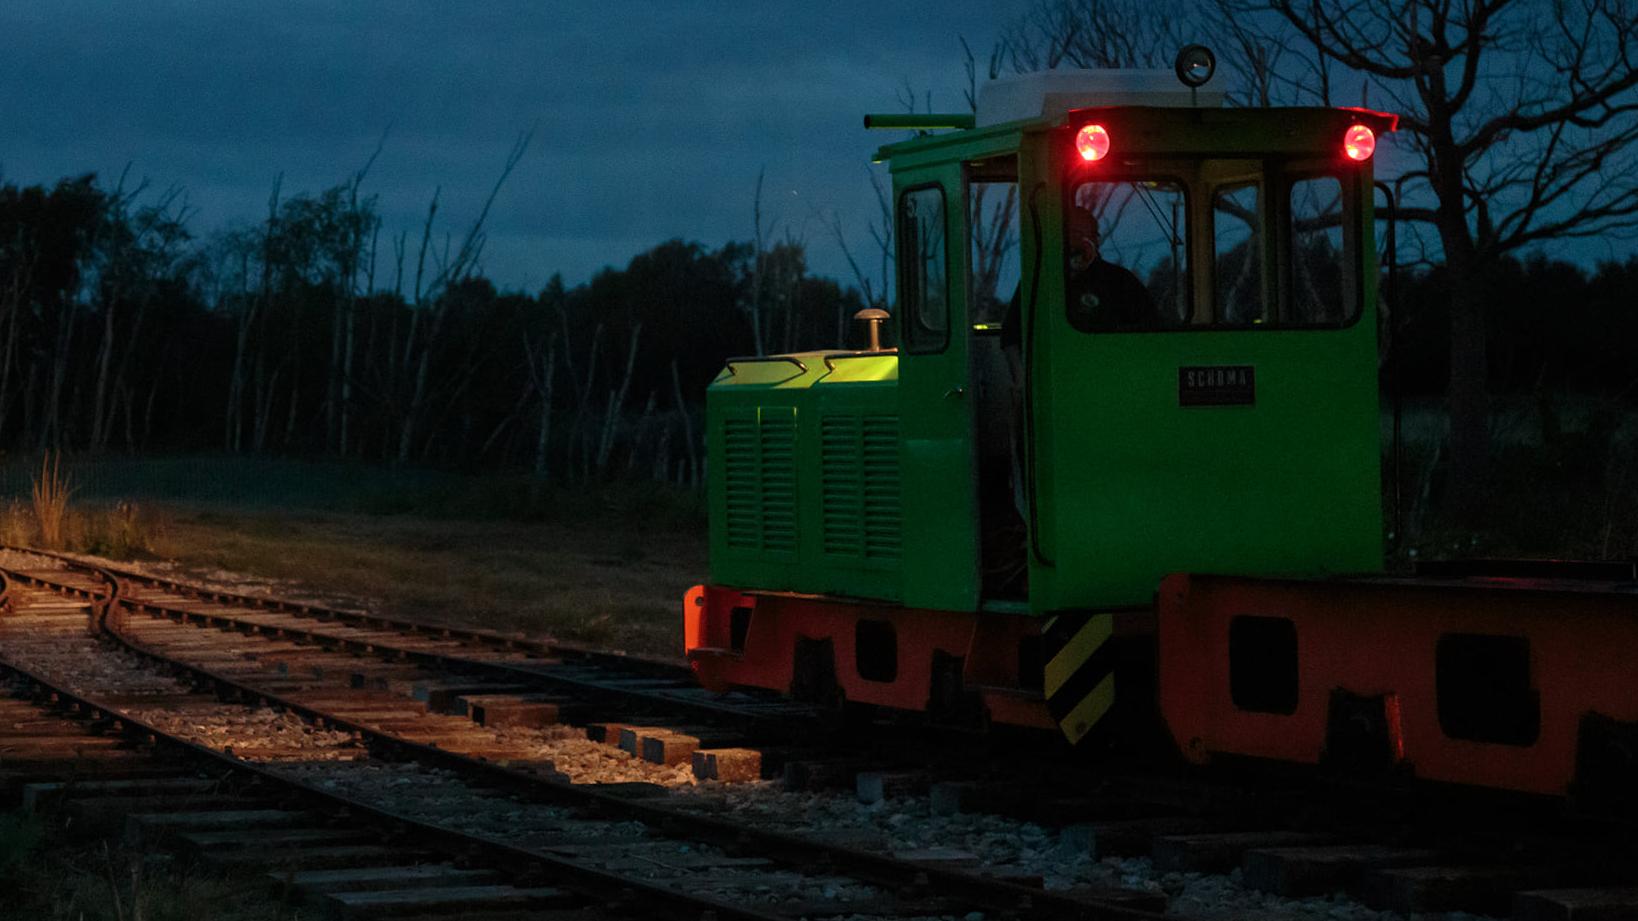 Spooky Goings On at Crowle Peatland Railway